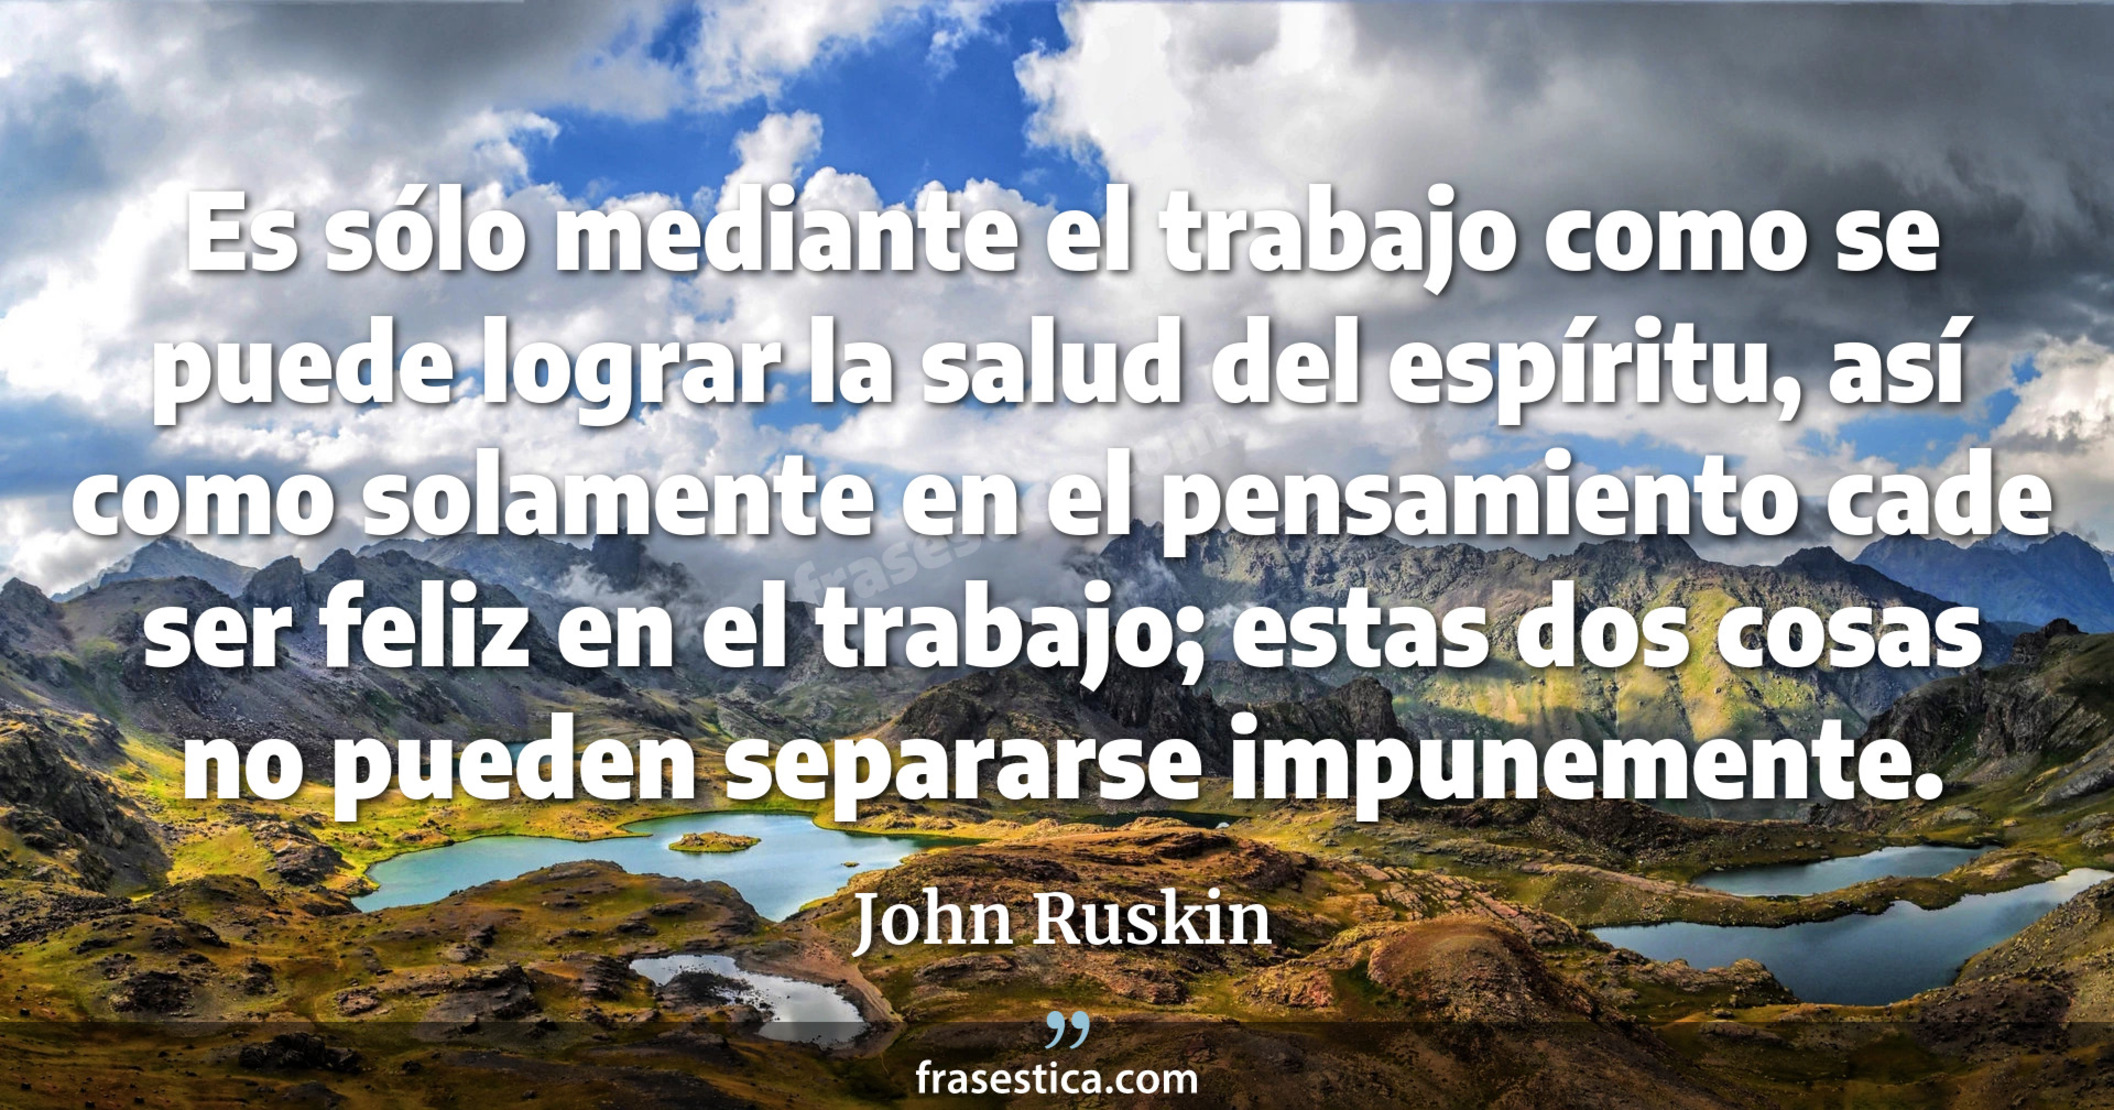 Es sólo mediante el trabajo como se puede lograr la salud del espíritu, así como solamente en el pensamiento cade ser feliz en el trabajo; estas dos cosas no pueden separarse impunemente. - John Ruskin